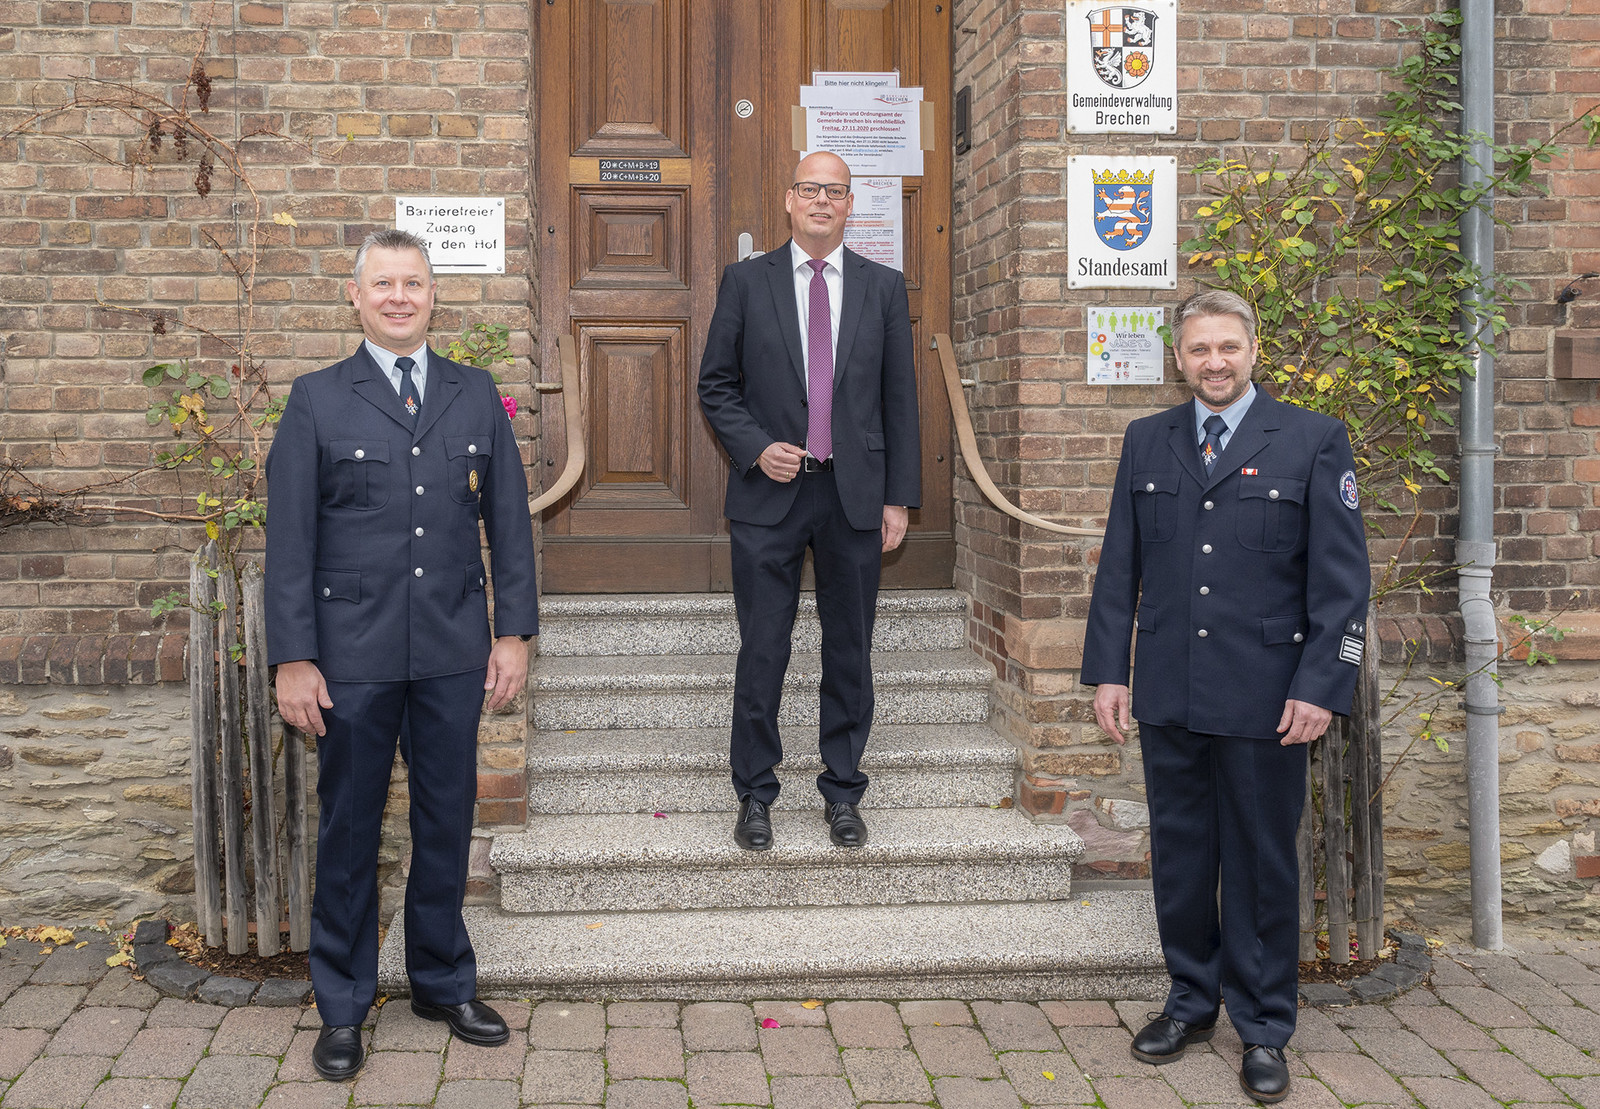 Der Verwaltungschef mit der Feuerwehrführung (von links): Timo Kahlheber (stellvertr.Gemeindebrandinspektor), Bürgermeister Frank Groos sowie Michael Gläser (Gemeindebrandinspektor)